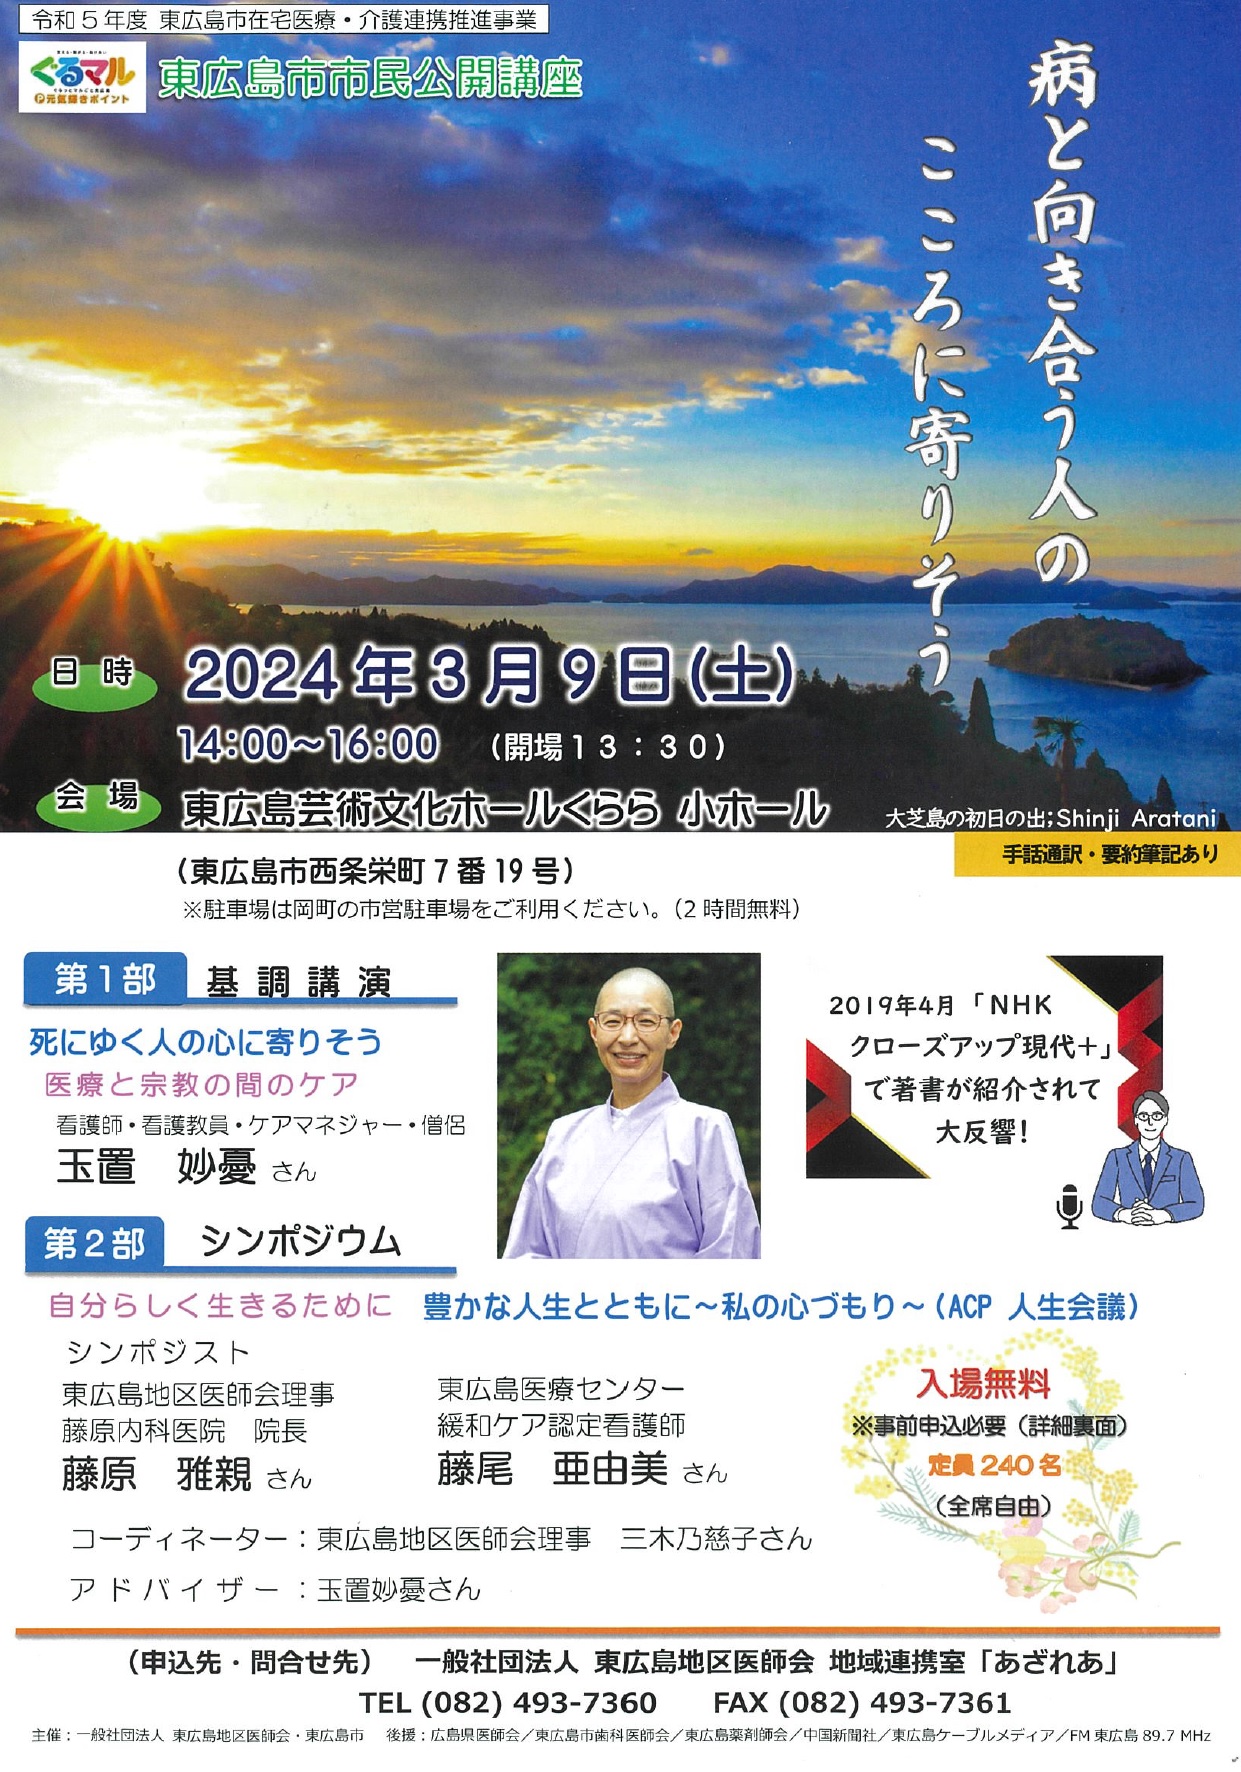 東広島市市民公開講座「病と向き合う人のこころに寄りそう」